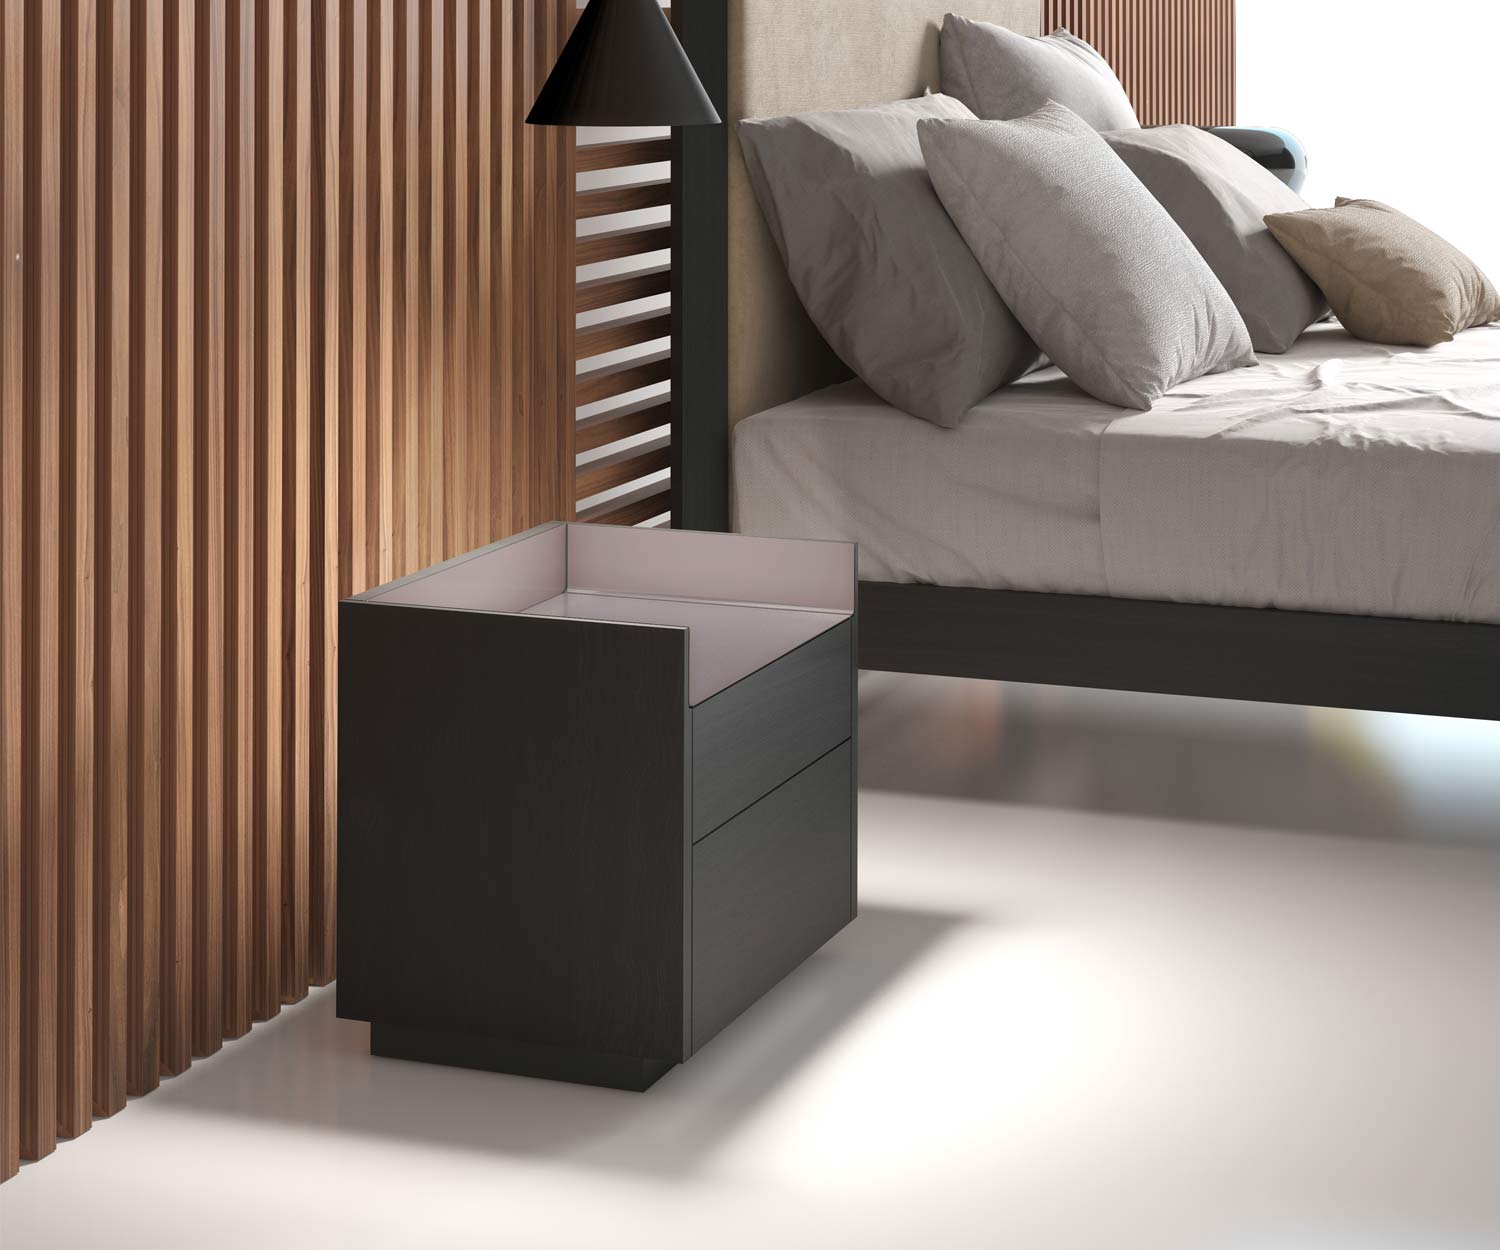 Hoogwaardig design nachtkastje in de slaapkamer met twee donkere lades